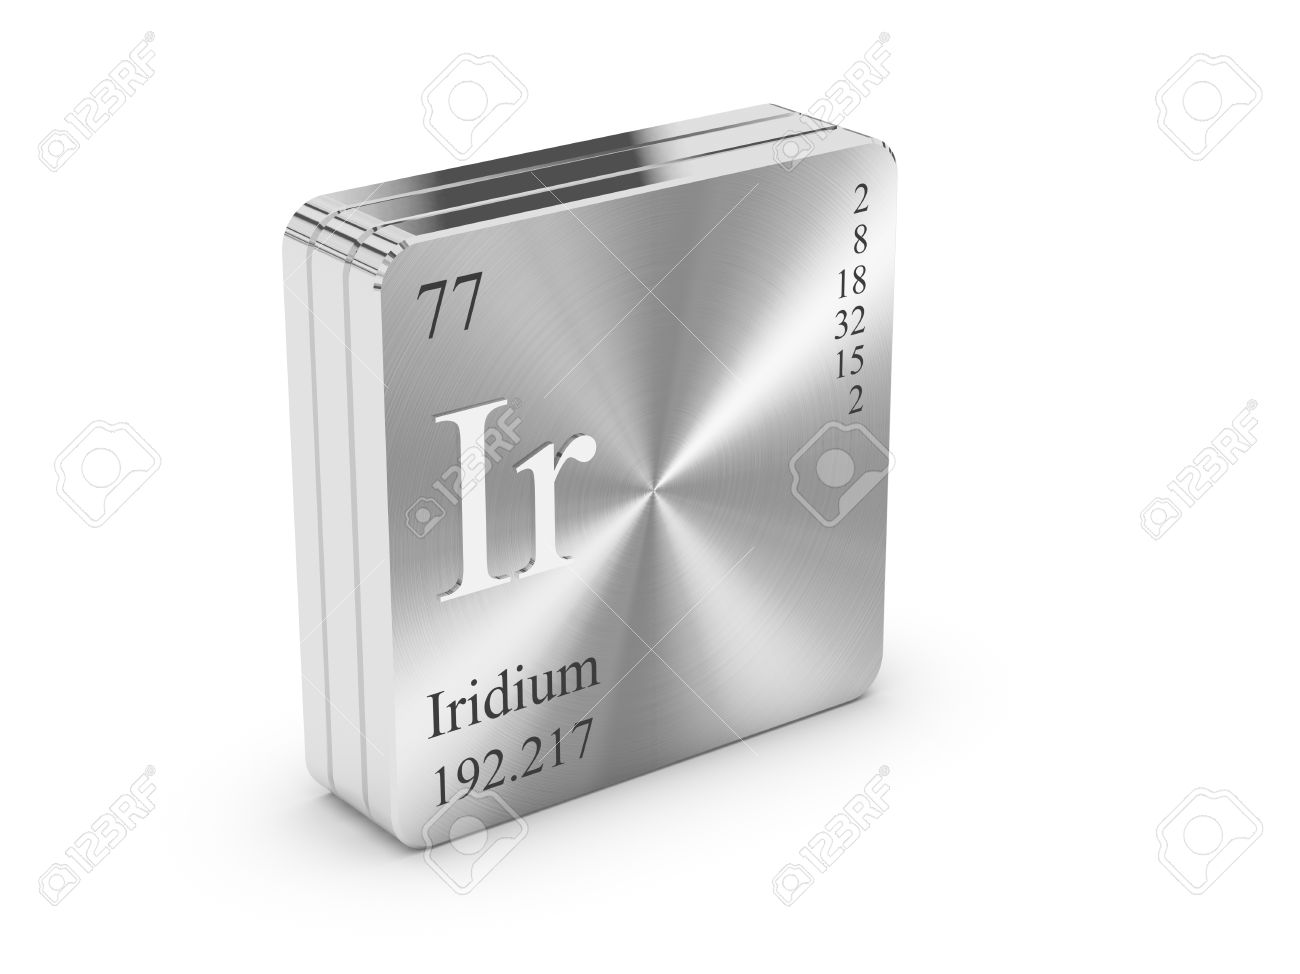 Iridium - Compte poids - il n'est pas livré physiquement